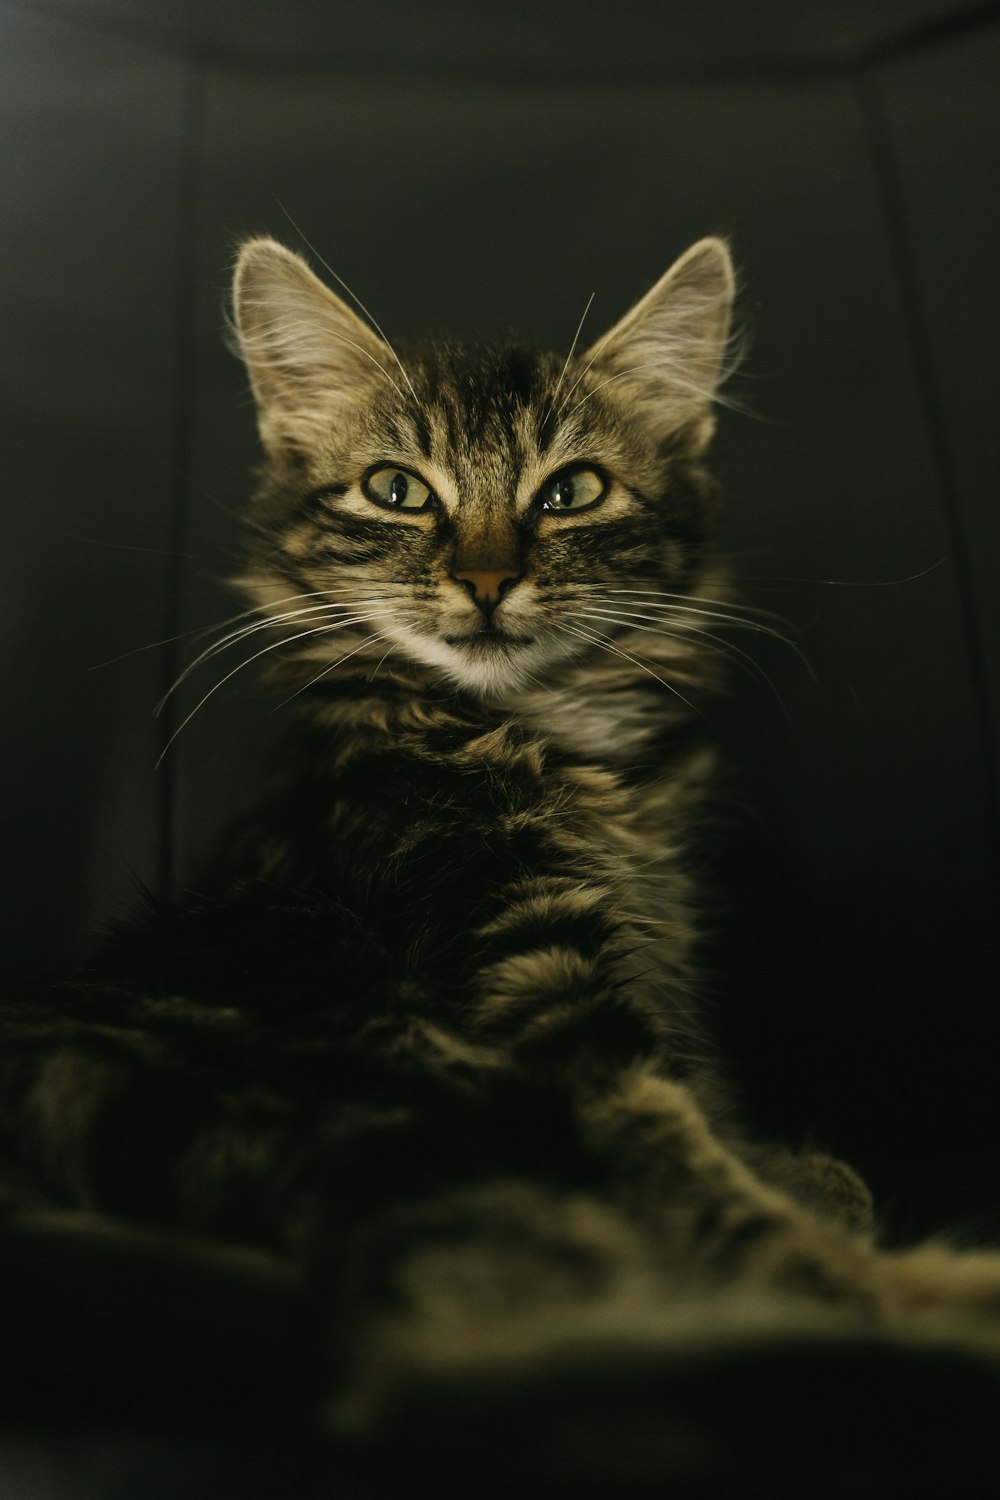 gato atigrado marrón en fotografía en escala de grises